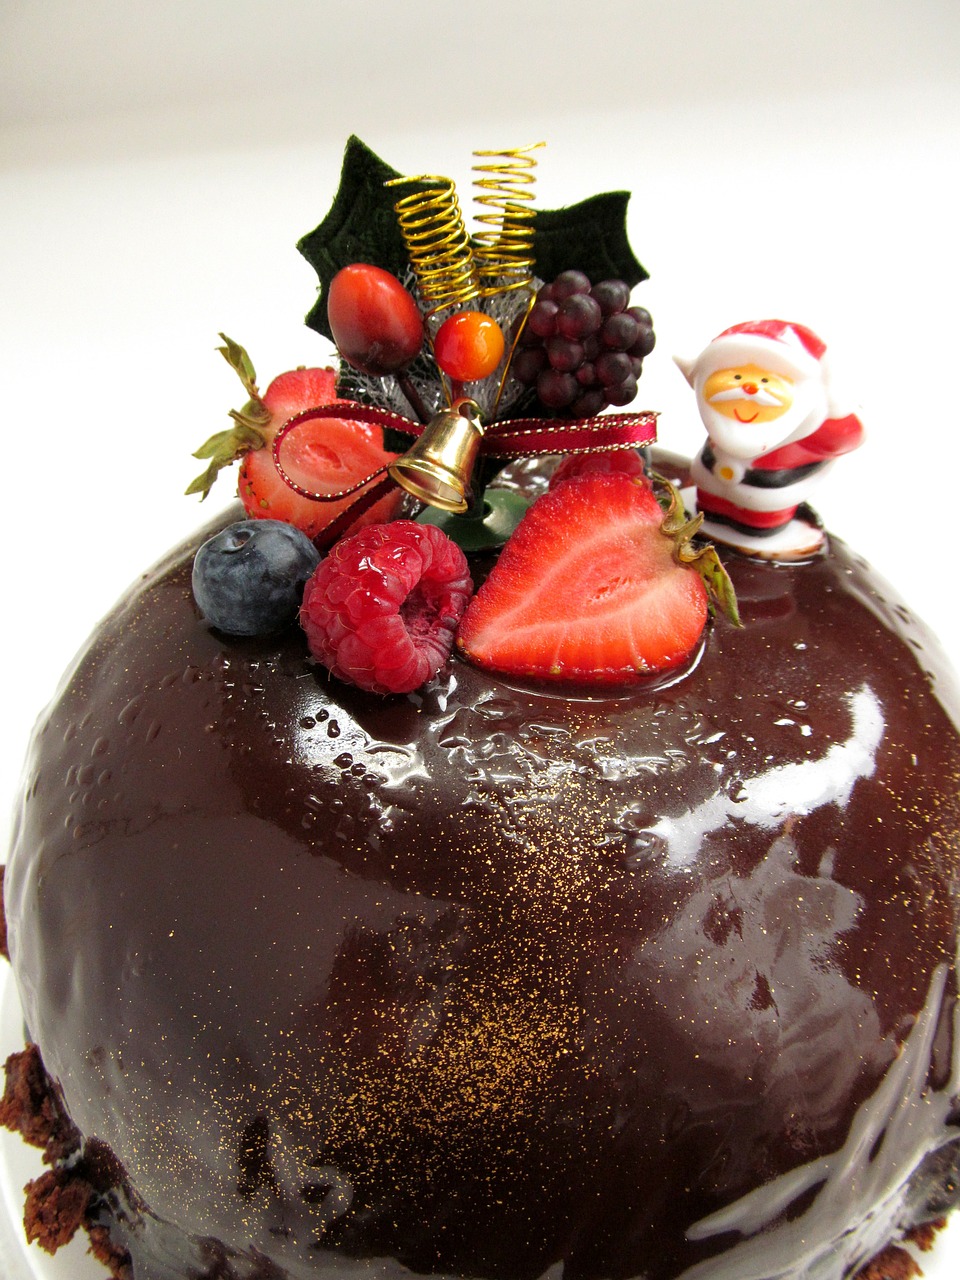 コストコのクリスマスケーキ19 ホリデーシフォンケーキ 旧ベリーグランドクリスマスバーケーキ の注文方法 価格 口コミは サヤメディア